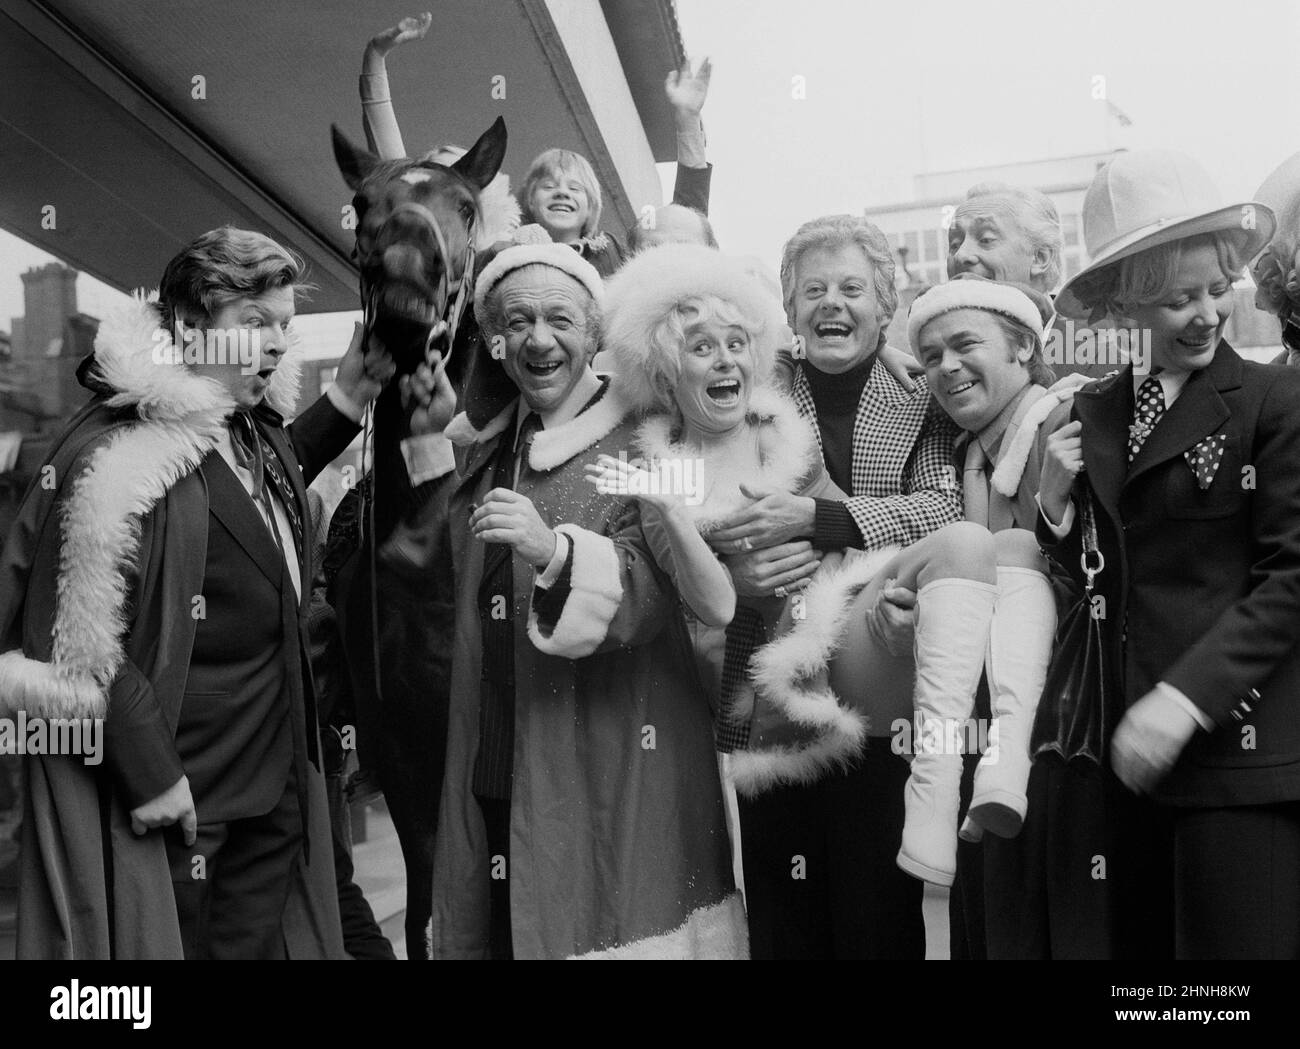 Das Aktenfoto vom 12/12/1973 von Entertainern, die zu Weihnachten auf ITV erscheinen sollten, wurde zu einer Party im New London Theatre versammelt. (Von links nach rechts) Benny Hill, das Pferd Black Beauty, Sid James, Tony Maiden, Barbara Windsor, Danny La Rue, Jack Smethurst, Hughie Green und Babs von den Beverely Sisters. Der Love Thy-Nachbar-Star Jack Smethurst ist im Alter von 89 Jahren gestorben. Ausgabedatum: Donnerstag, 17. Februar 2022. Stockfoto